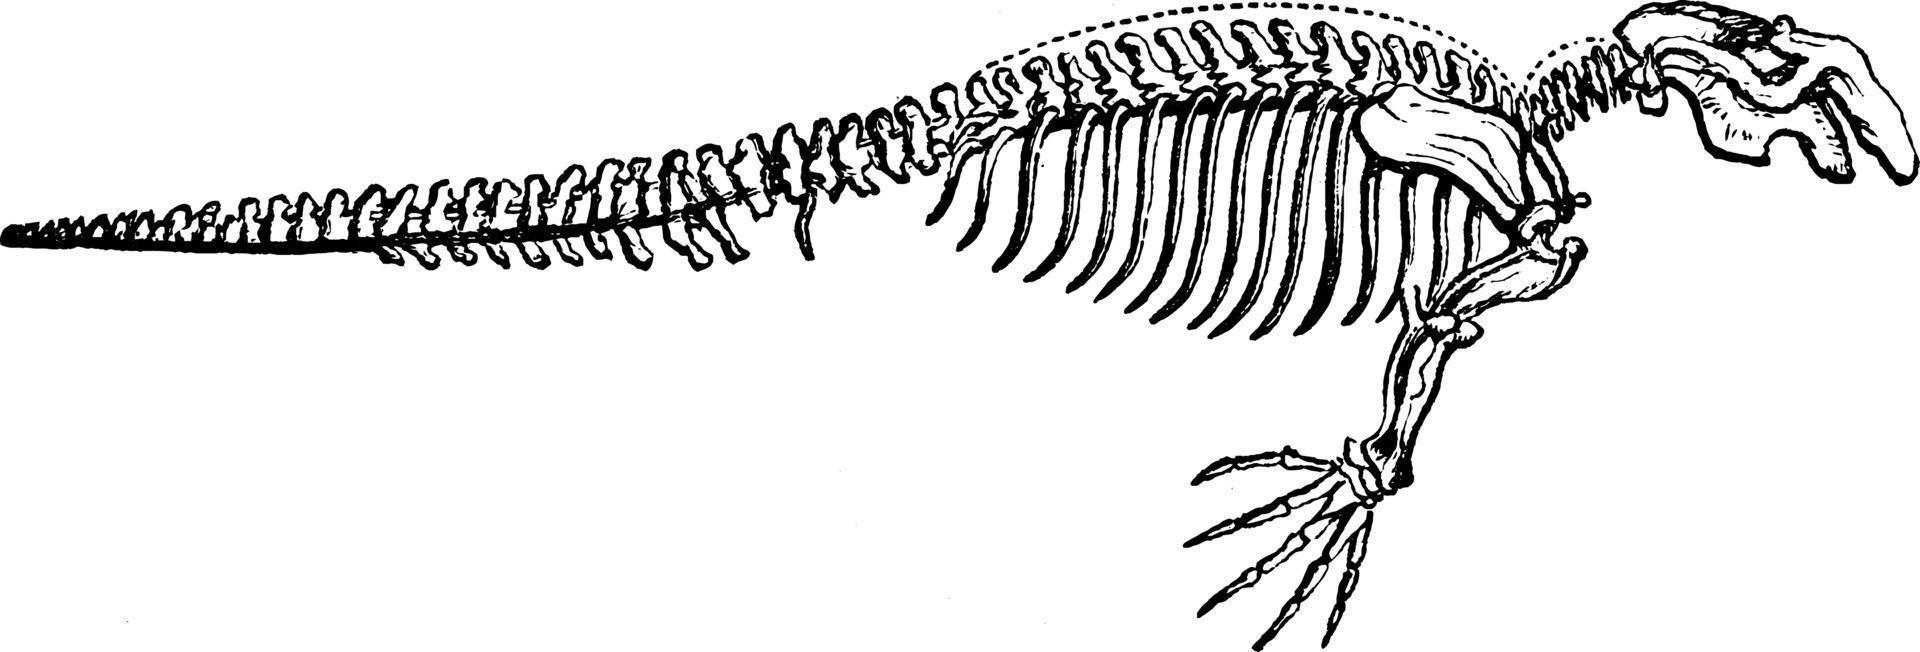 esqueleto del dugongo, ilustración antigua. vector